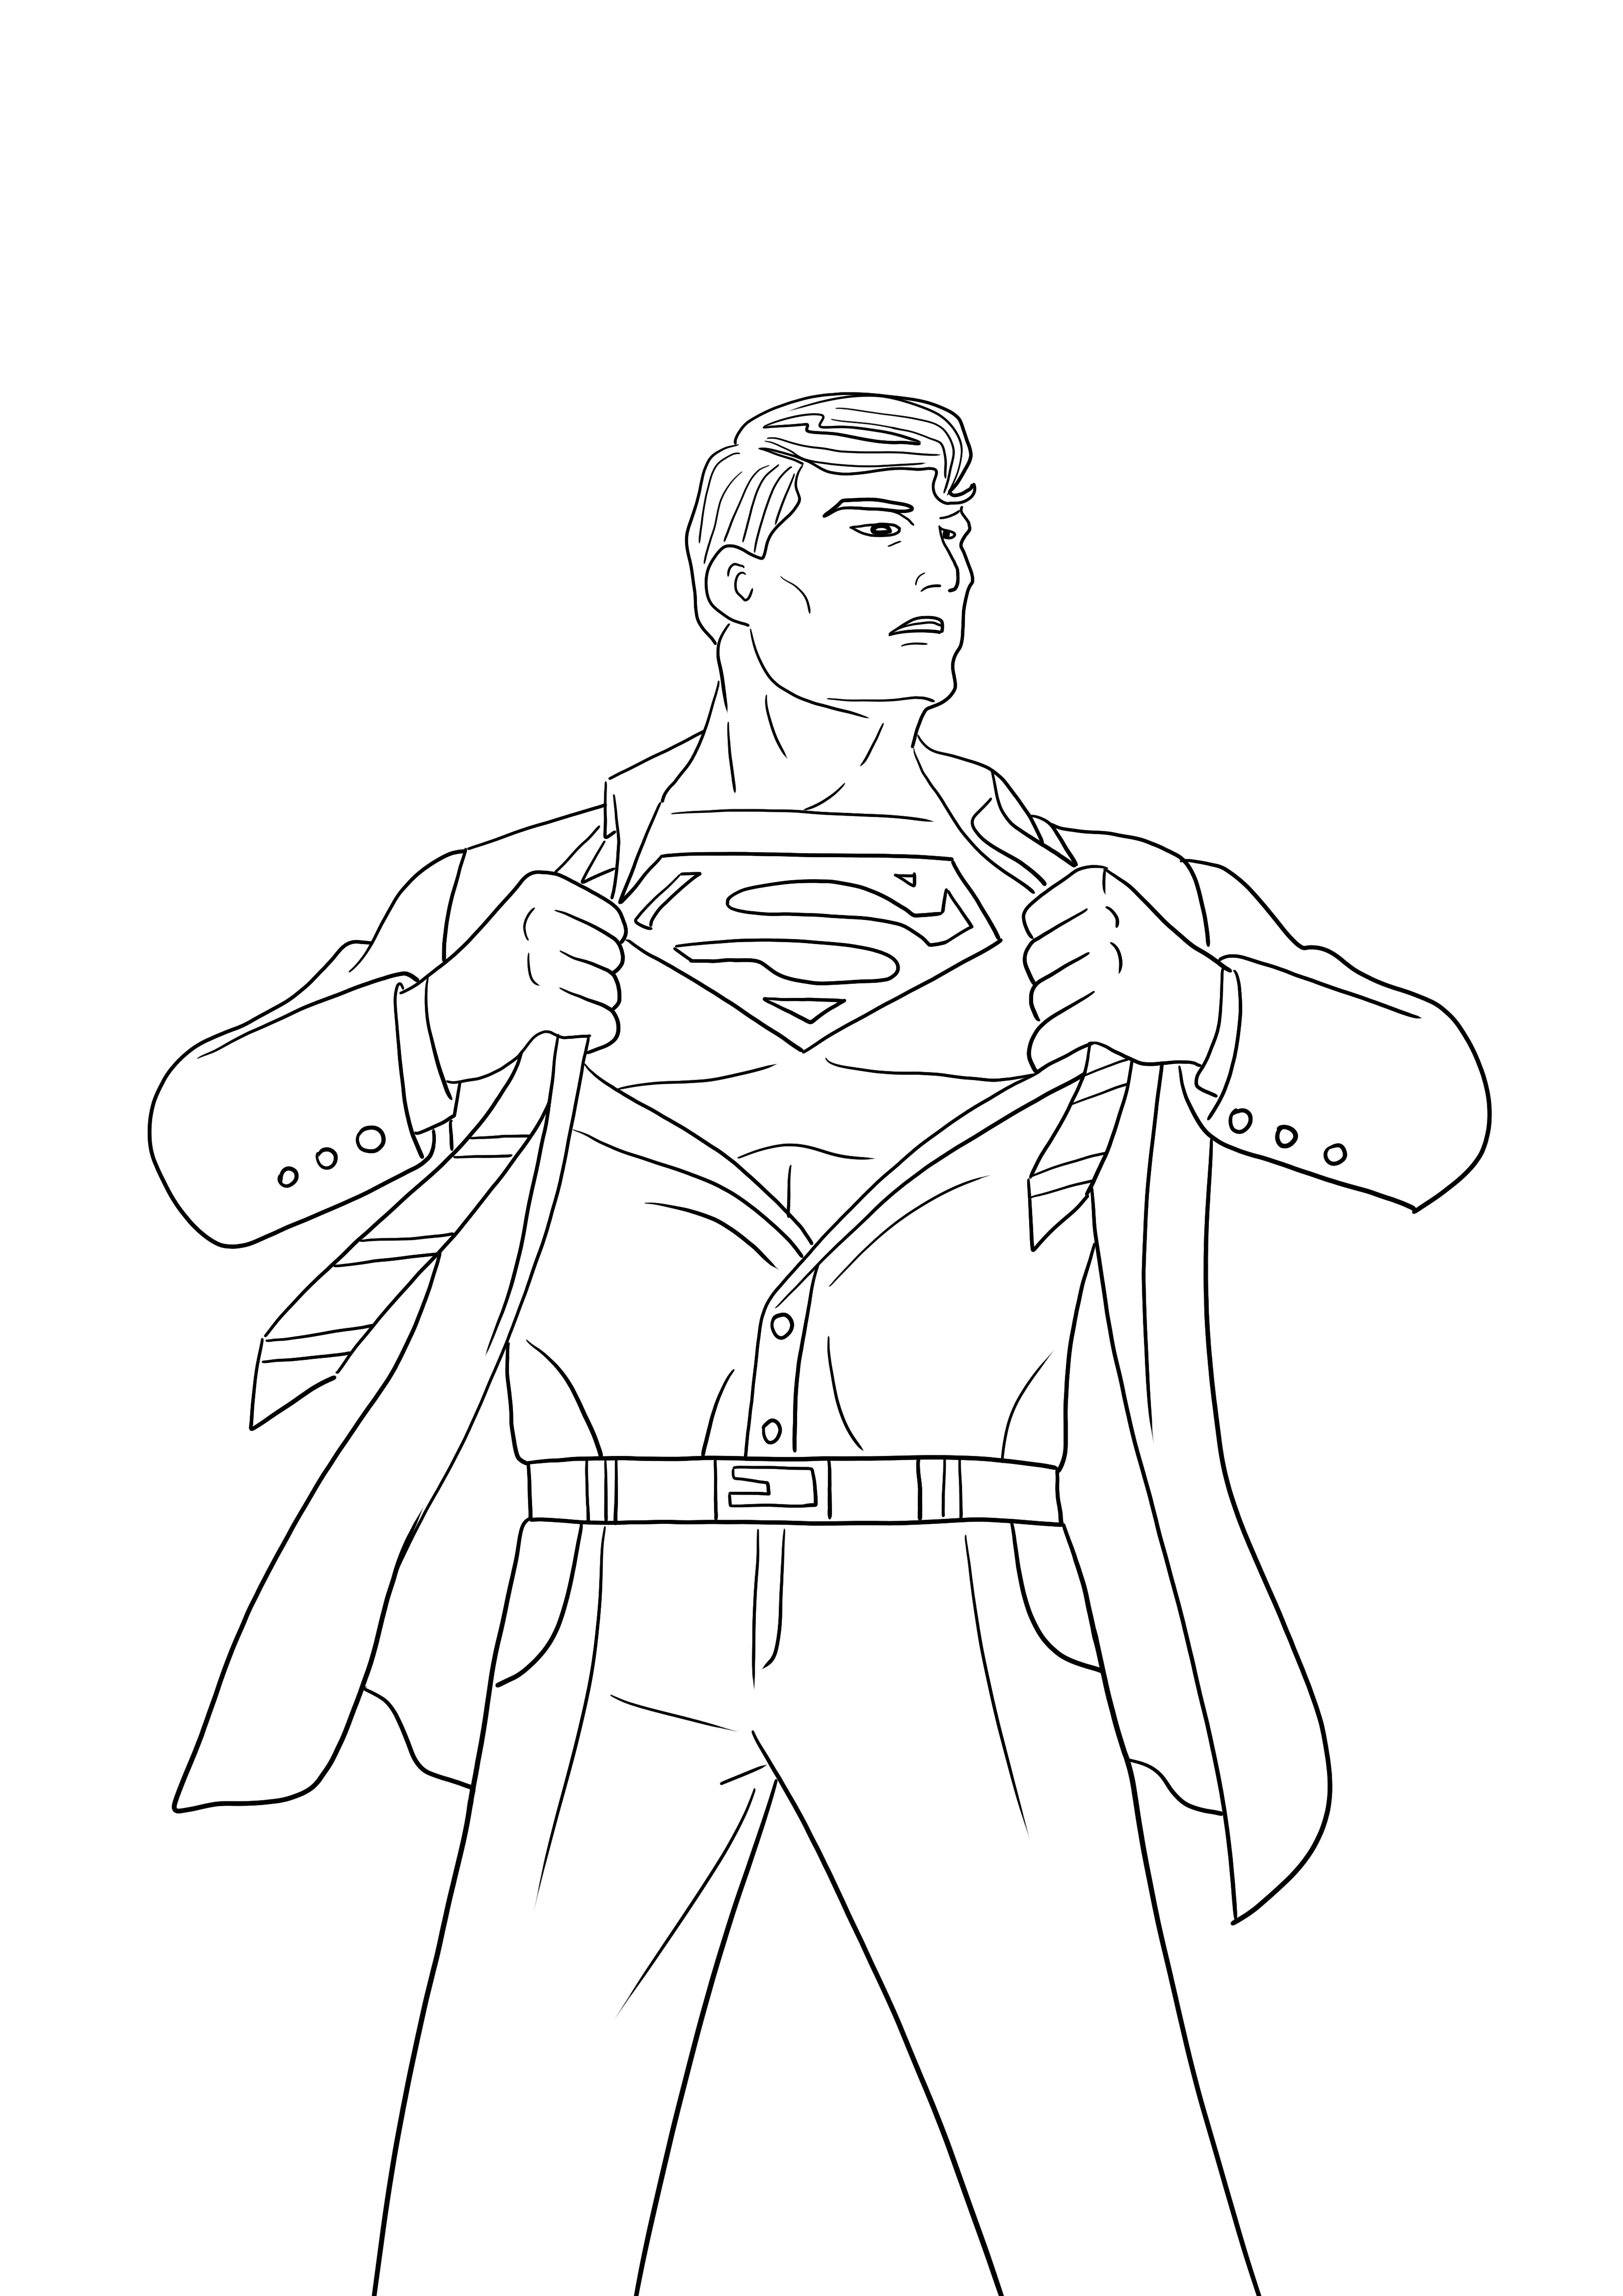 Superman está revelando sua imagem livre de impressão e coloração de identidade